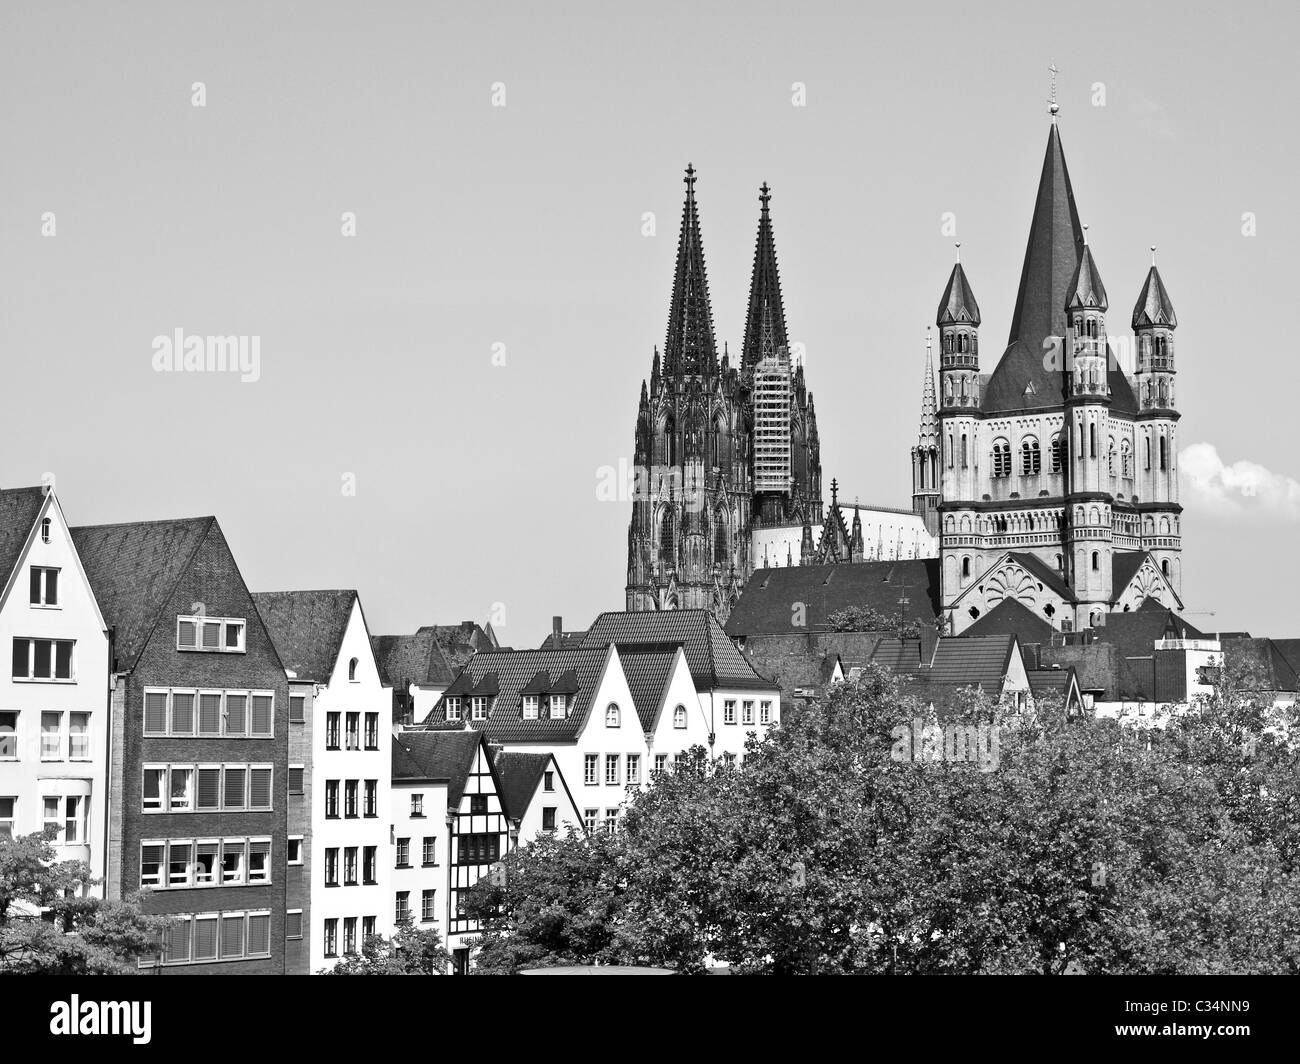 Koelner Dom (Cologne Cathedral) in Koelne, Germany Stock Photo